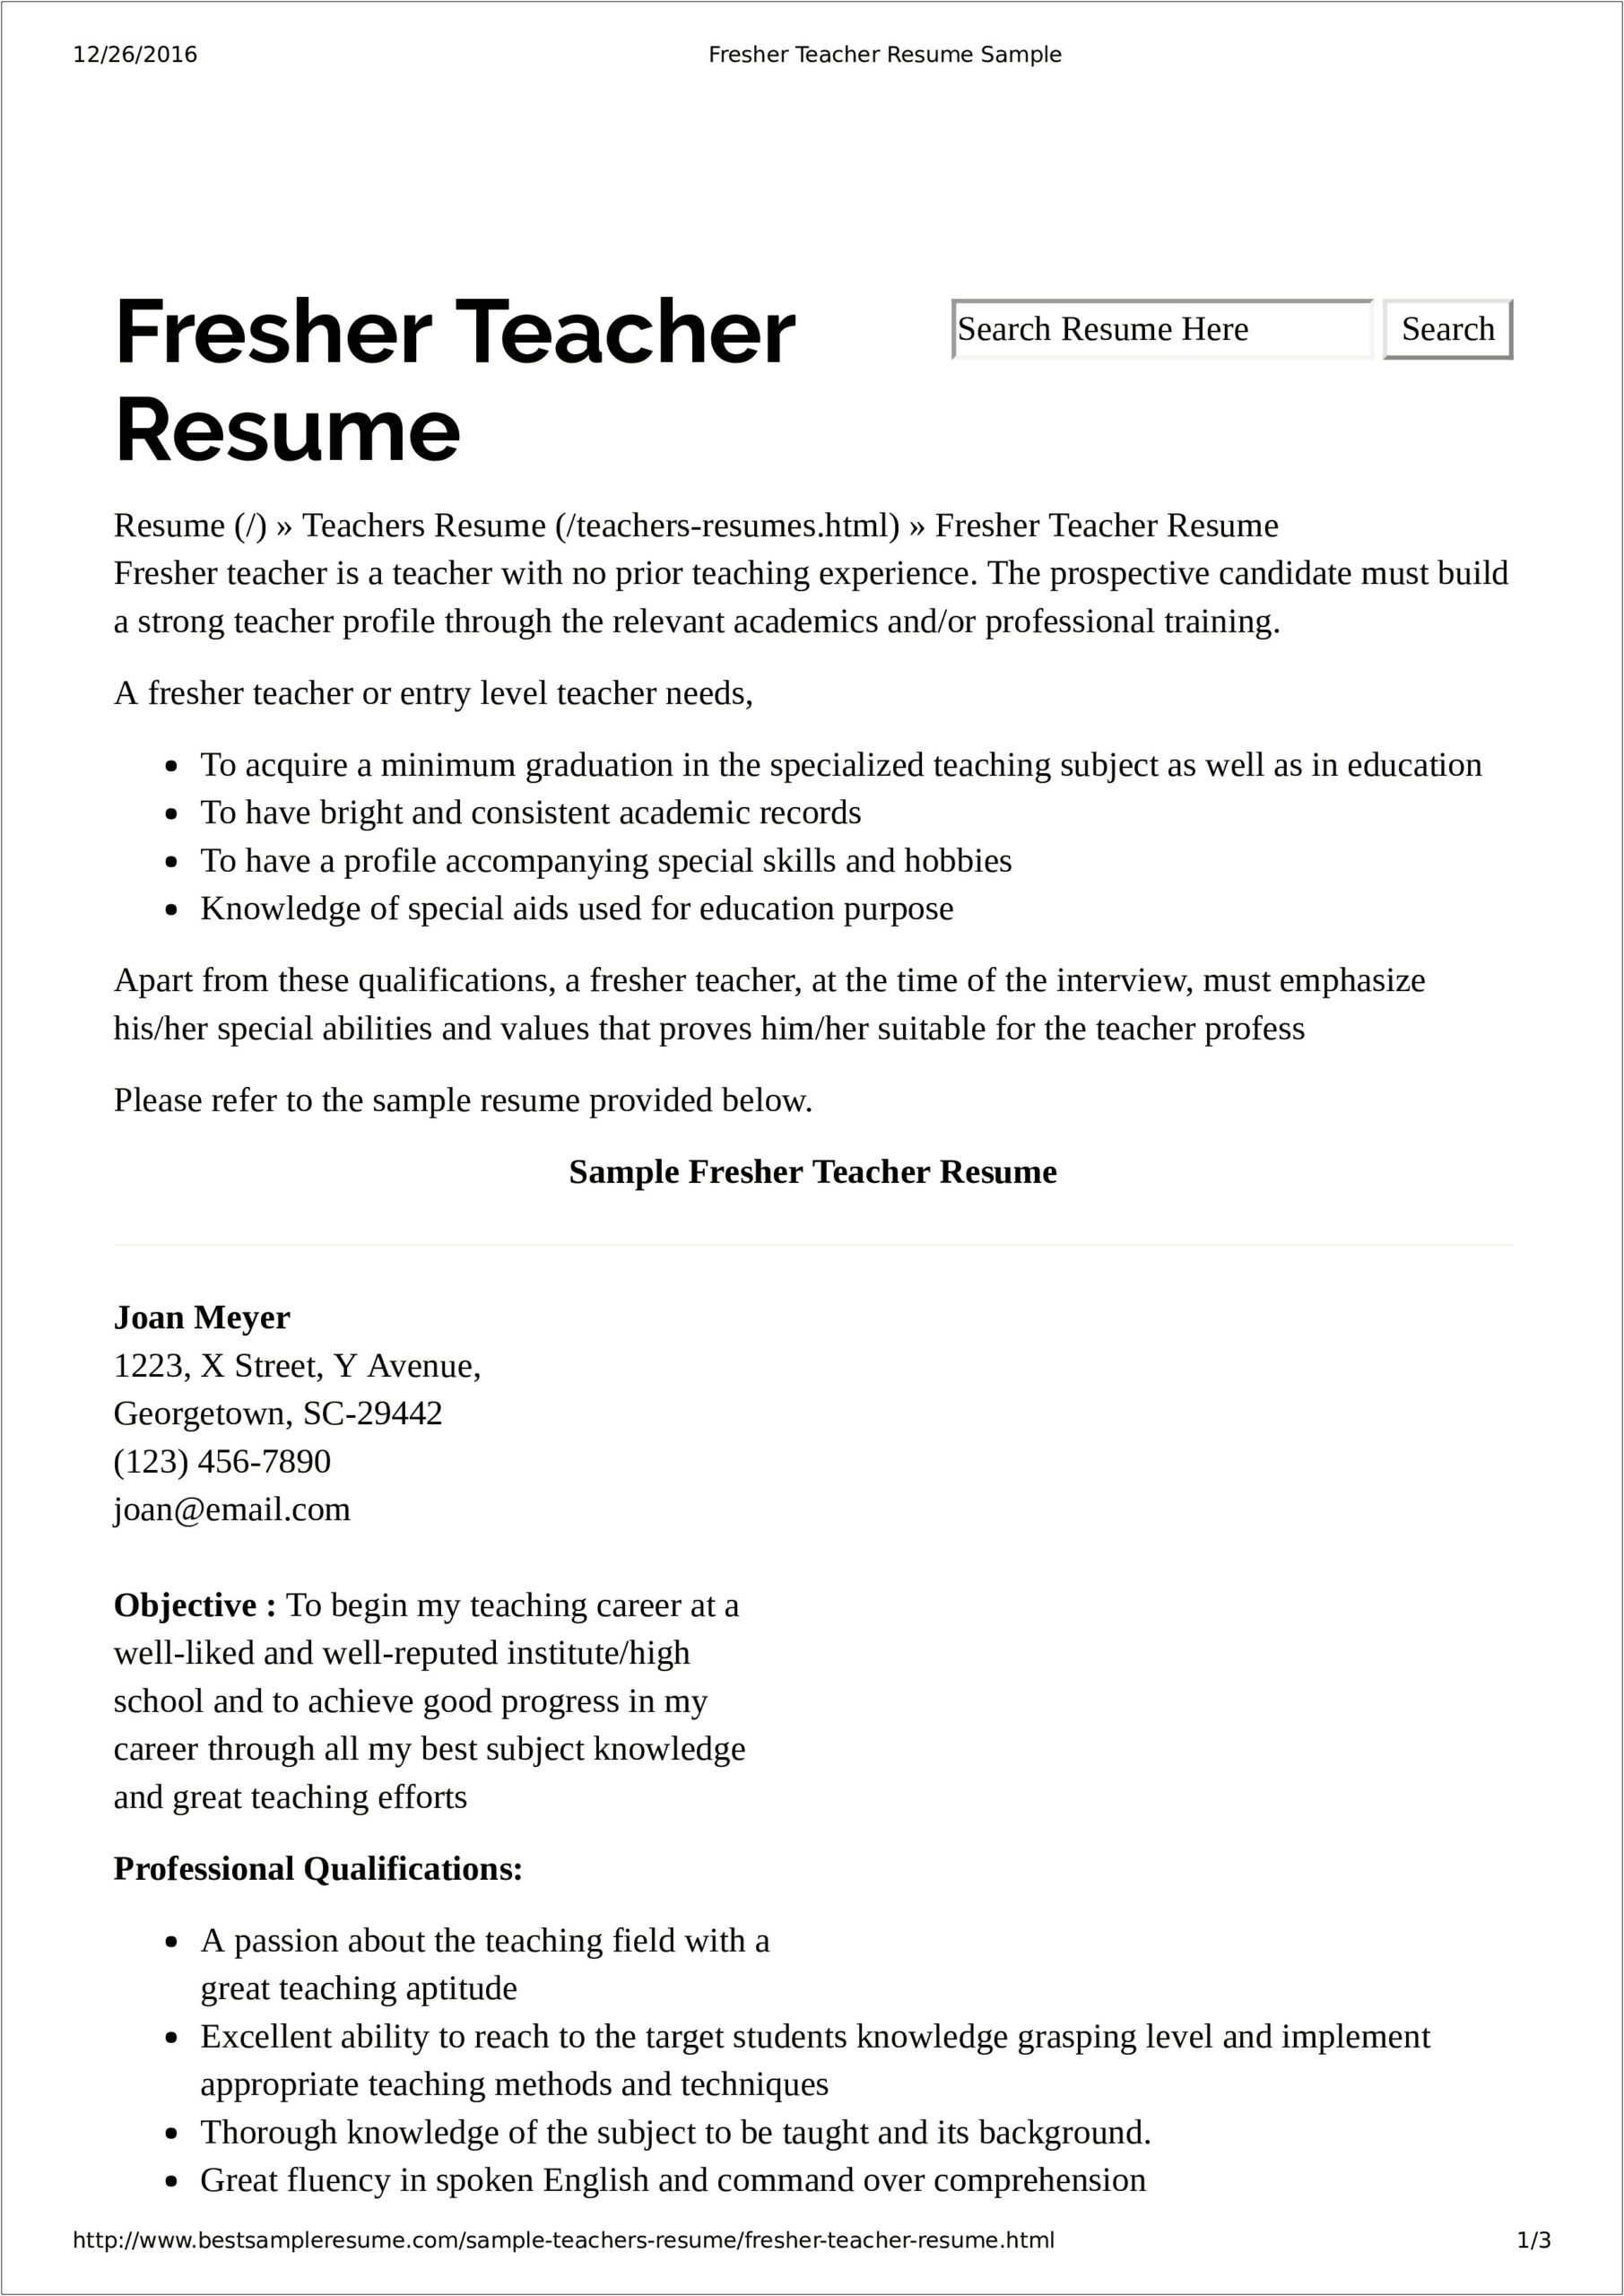 Best Resumes For Teachers Samples